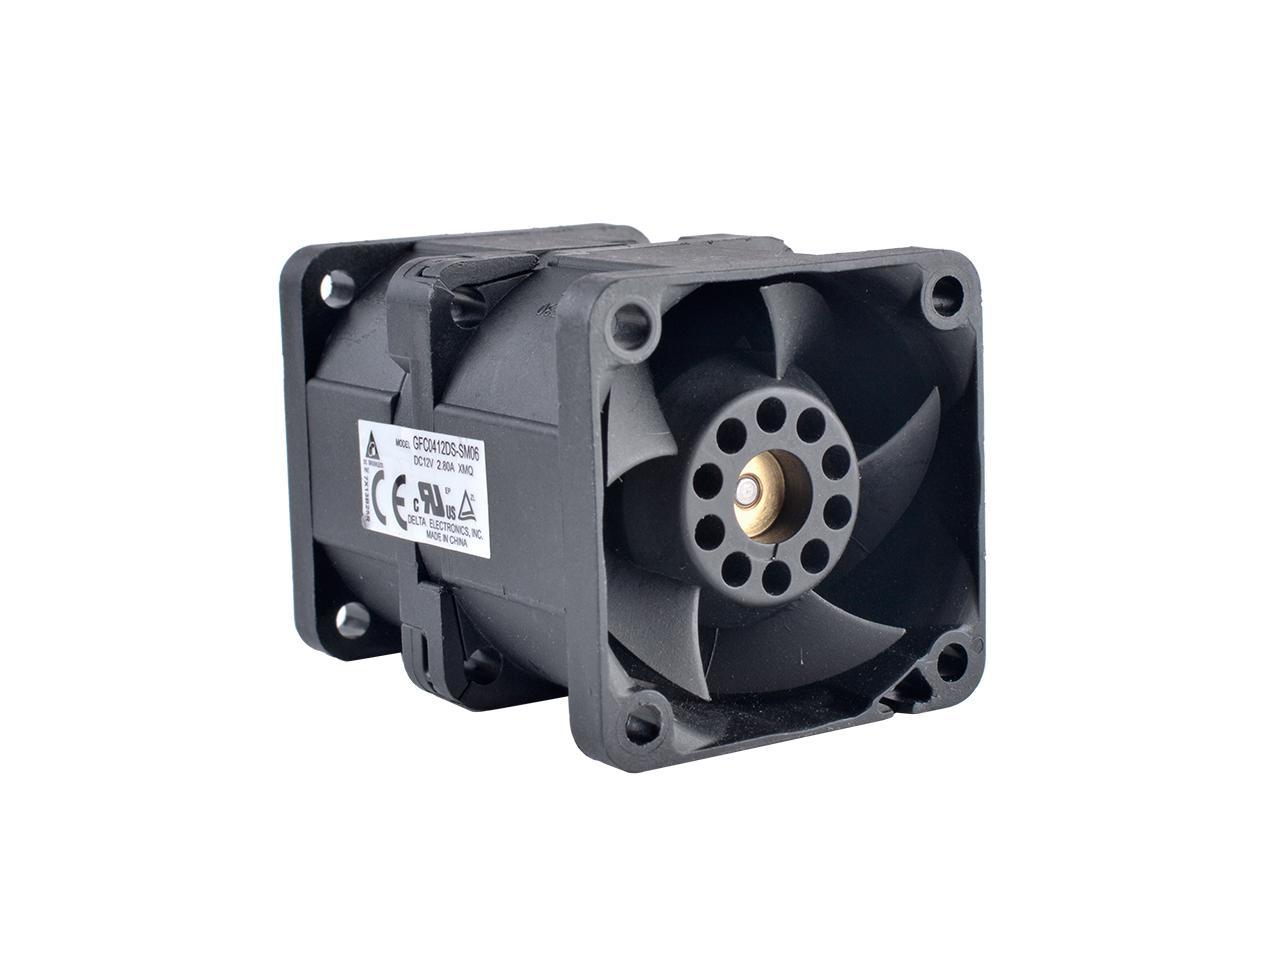 DELTA GFC0412DS-SM06 4cm 40mm fan 4056 12V 2.80A Dual fan dual motor ...